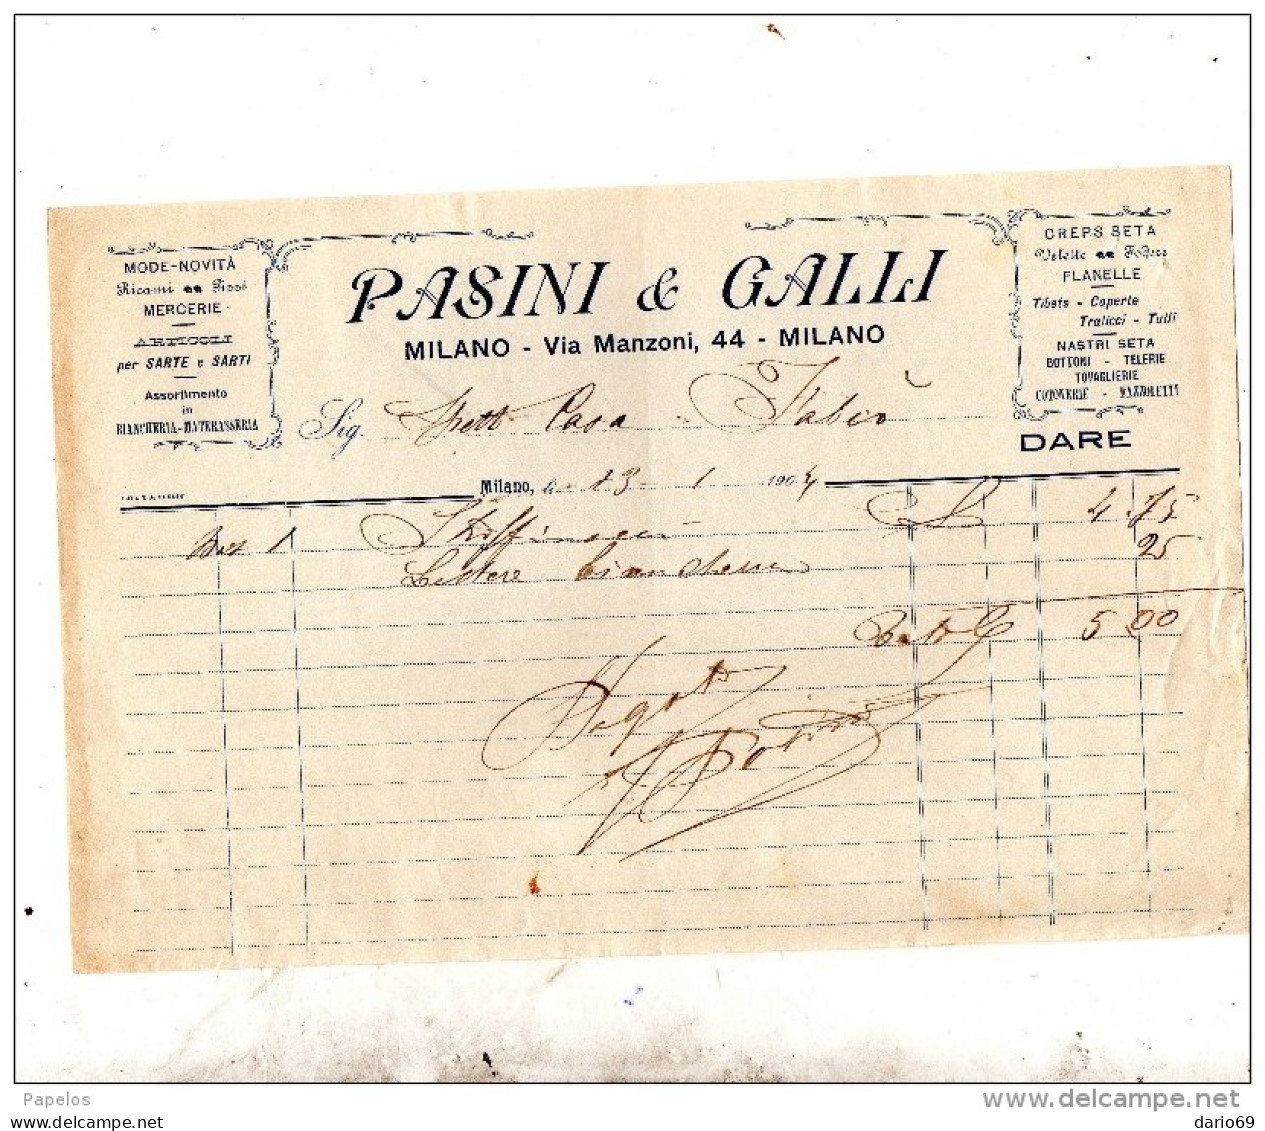 1904 MILANO - PASINI & GALLI MODE NOVITÀ RICAMI - Italien